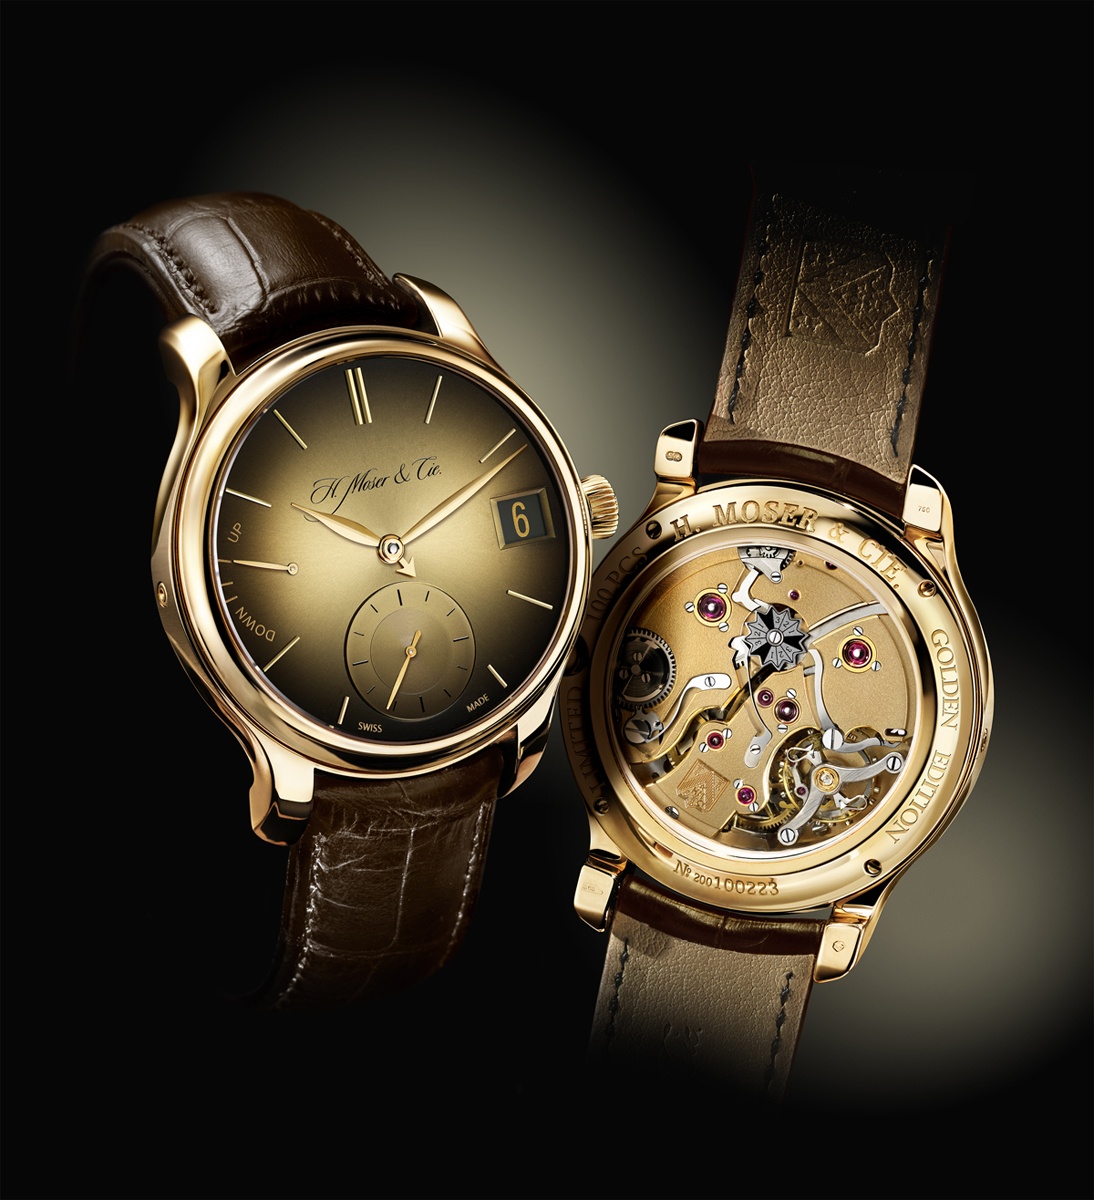 Высокое качество швейцарских часов. H Moser Cie часы. Moser Perpetual 1. Швейцарские часы Swiss watch. Эксклюзивные часы.